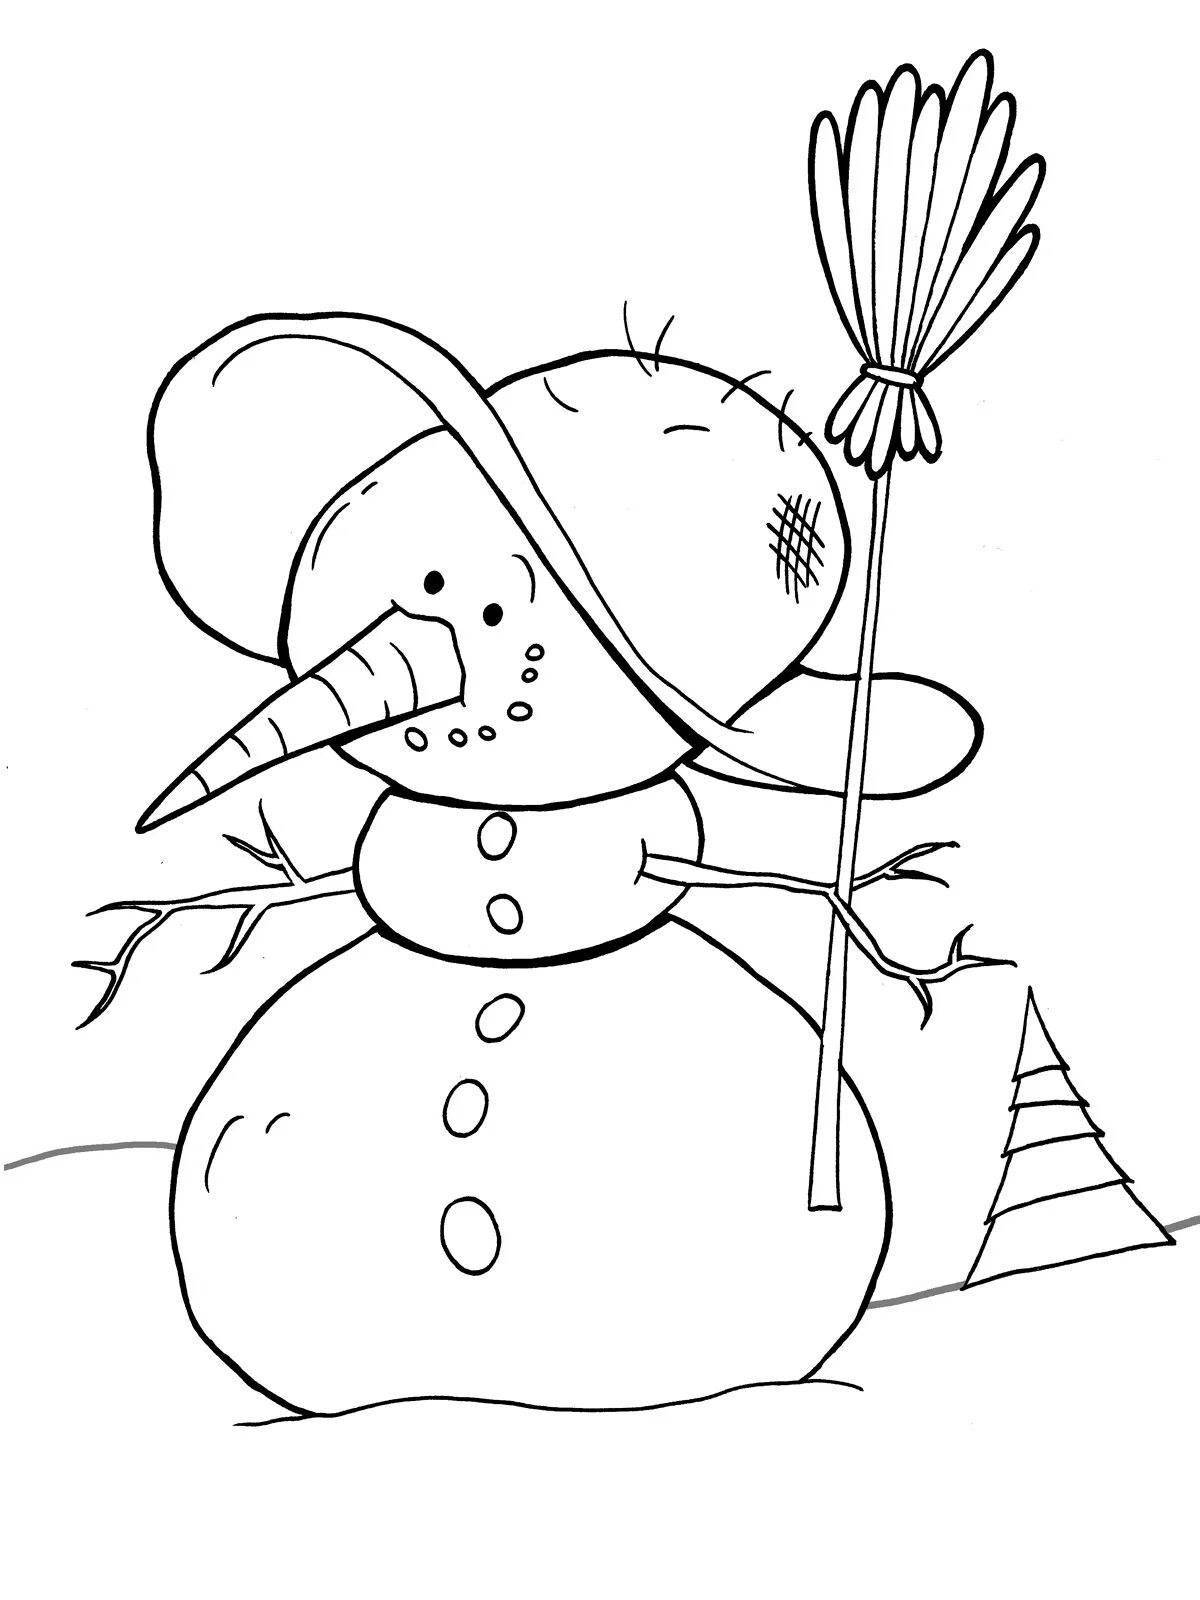 Веселая раскраска смешной снеговик для детей